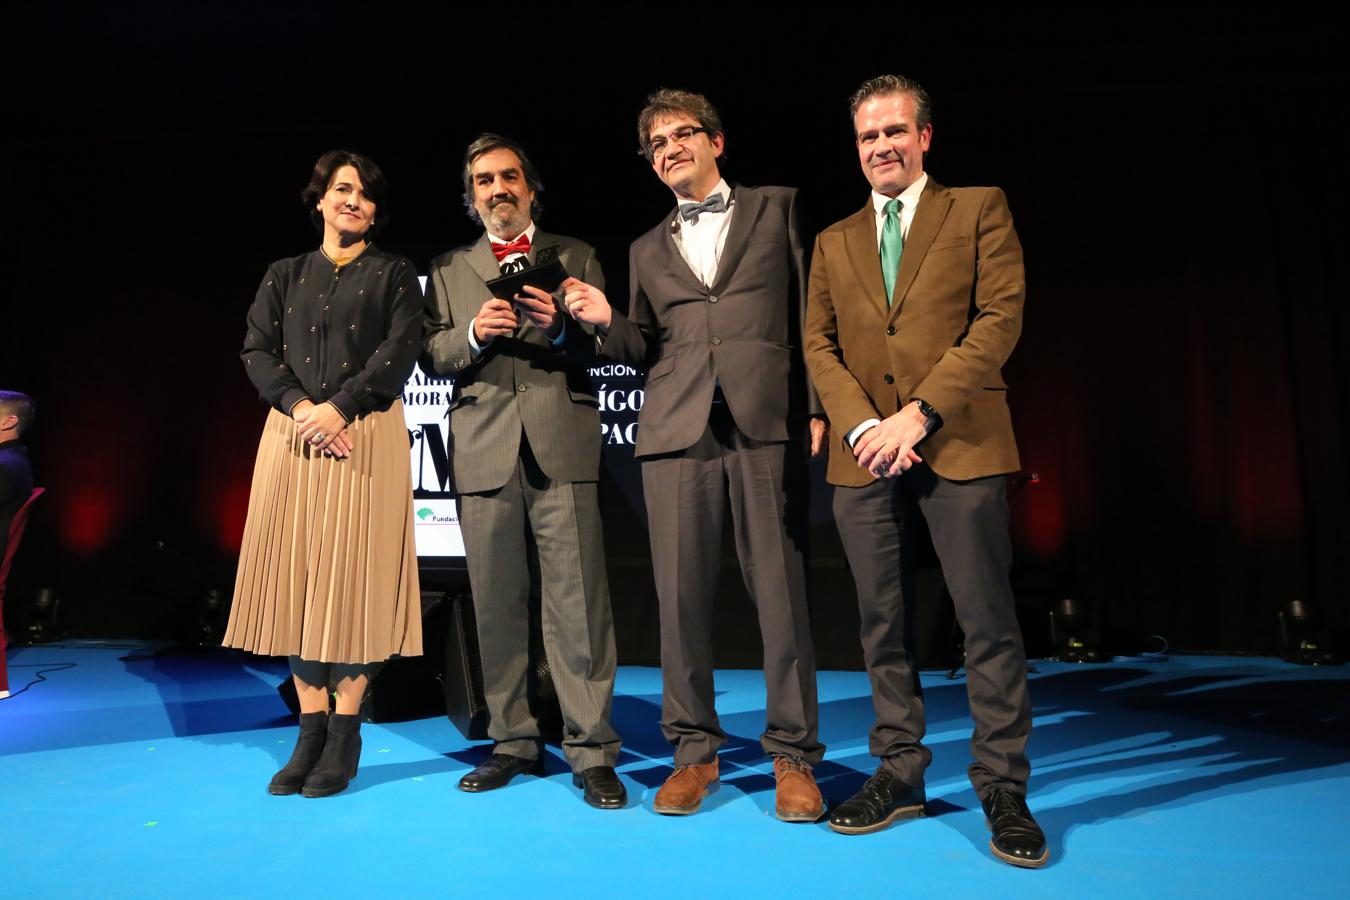 La Diputación rinde homenaje a Garrido Moraga con la entrega de sus galardones a la cultura malagueña. En la foto, Idígoras y Pachi, con Emilia Garrido y Víctor González. 